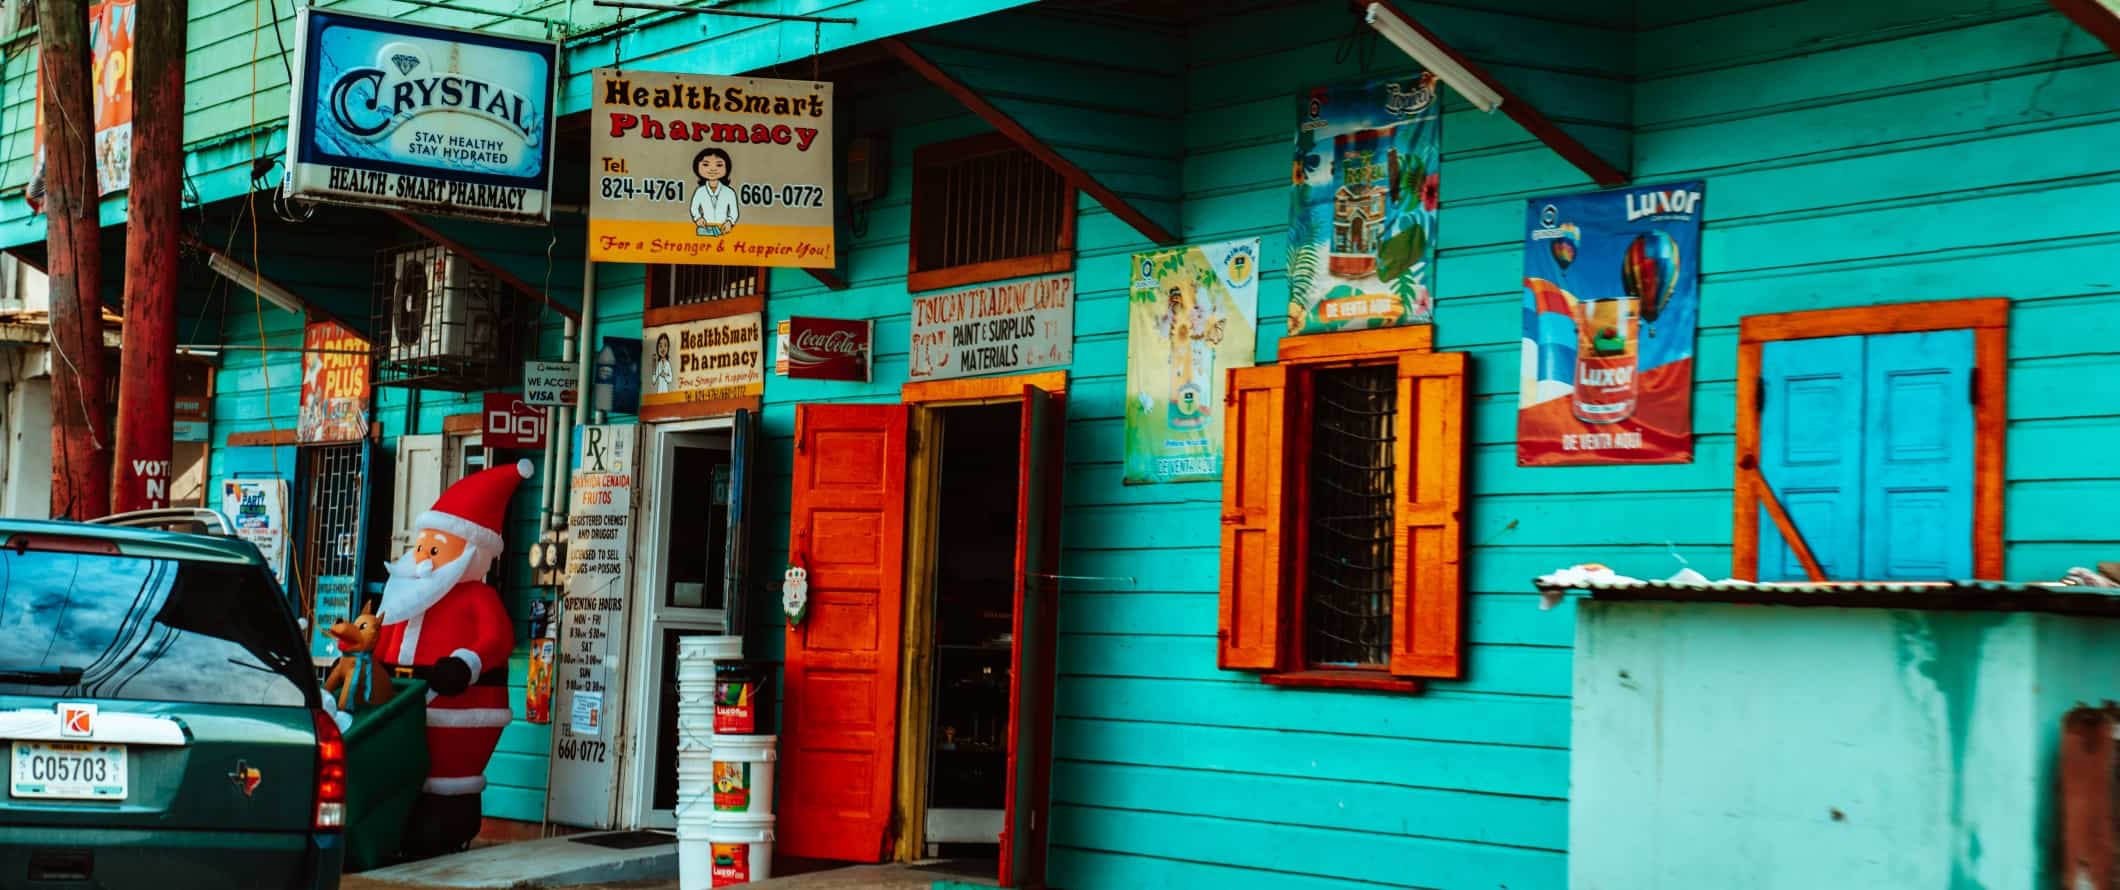 Turquoise shop with red doors in San Ignacio, Belize